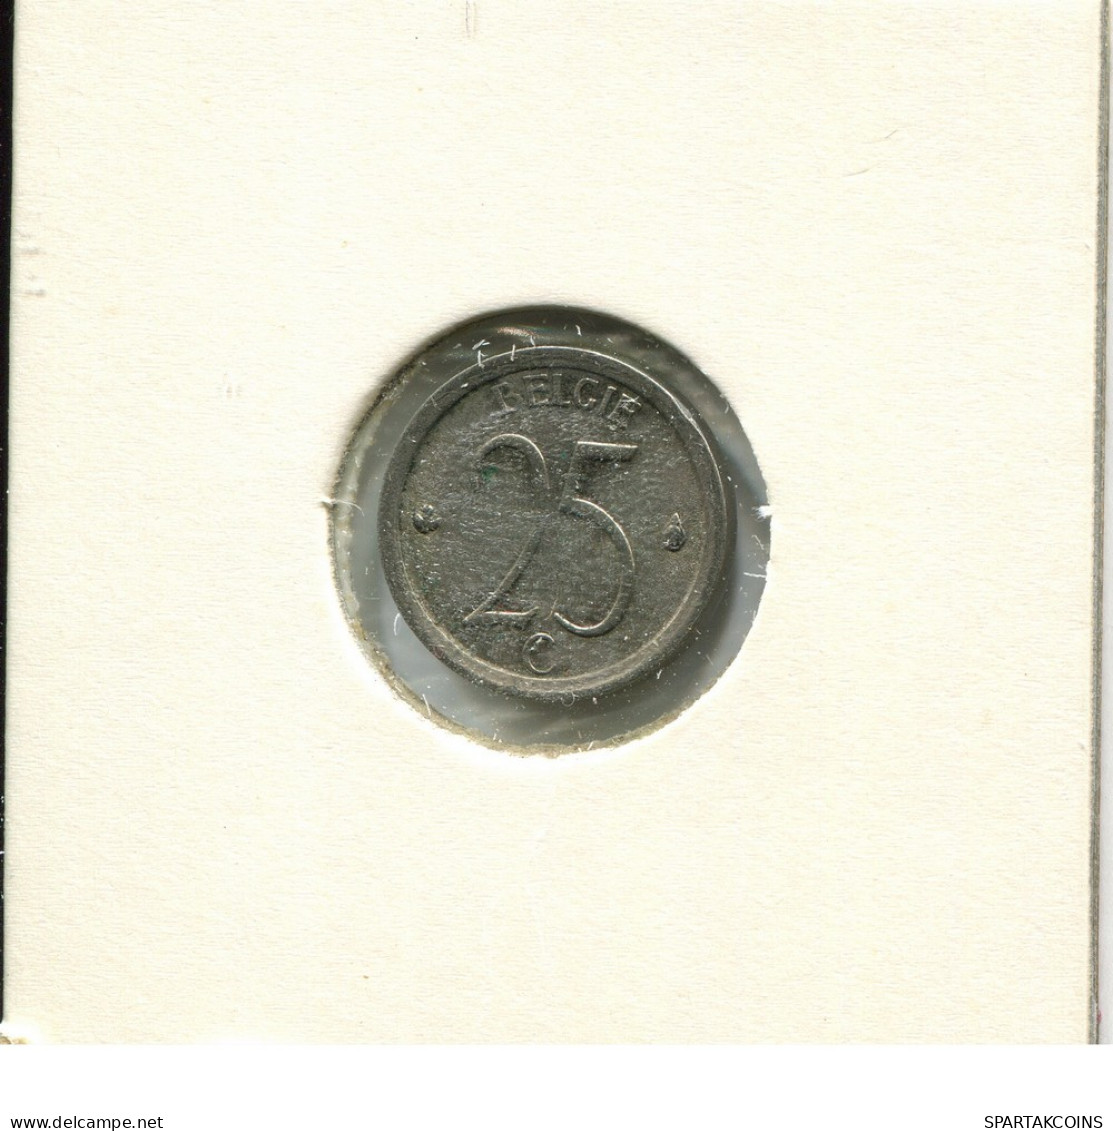 25 CENTIMES 1968 DUTCH Text BELGIUM Coin #AU606.U - 25 Centimes